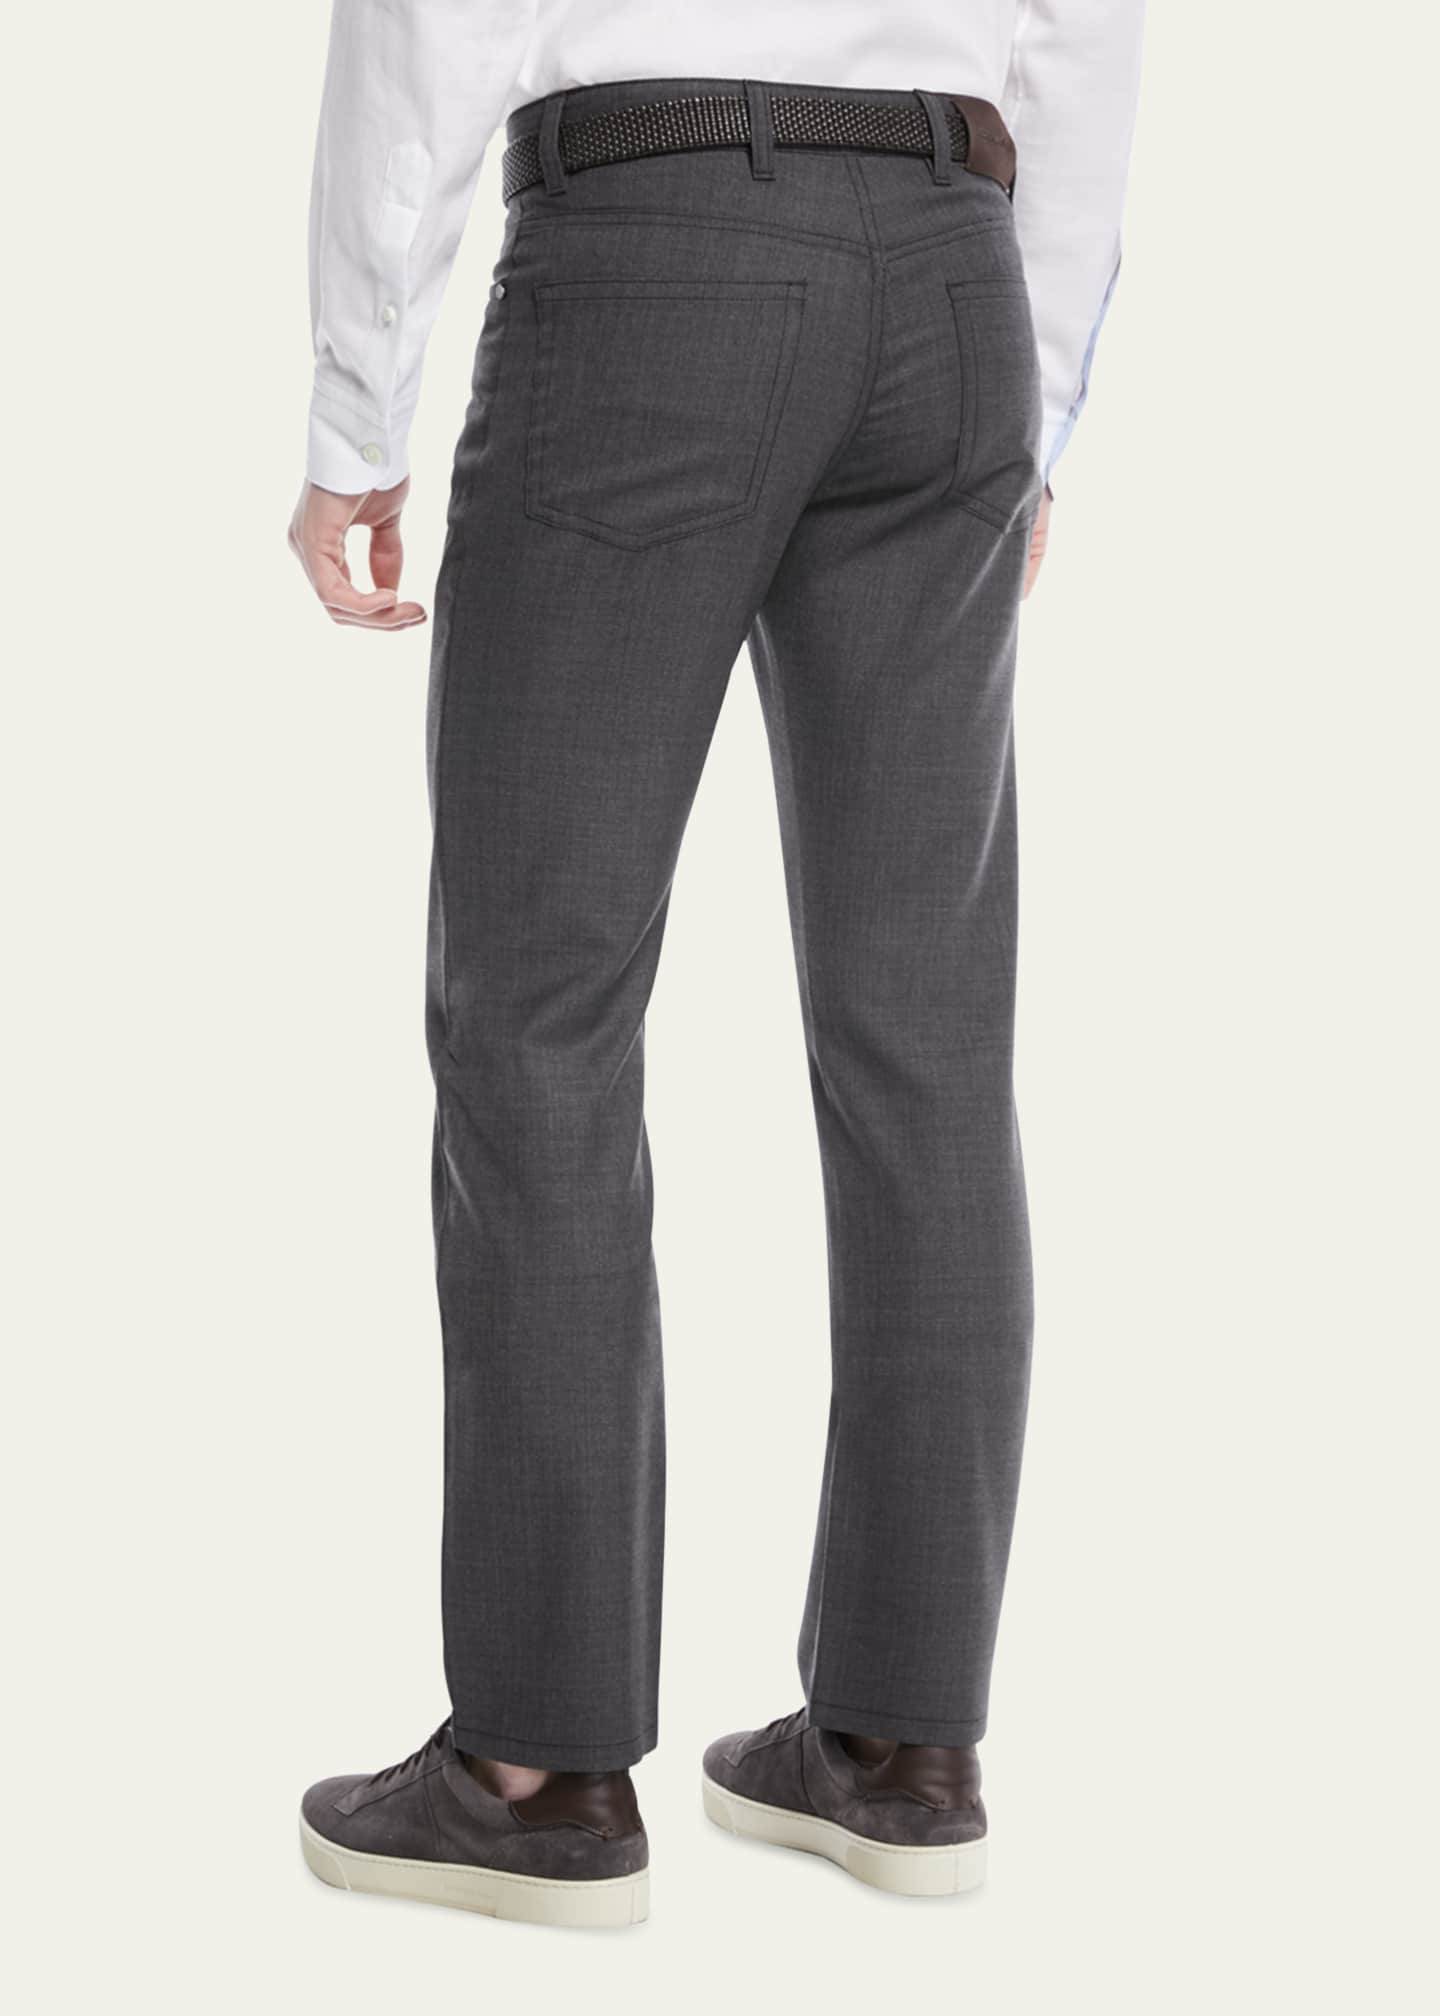 ZEGNA Men's Regular-Fit Textured Wool-Blend 5-Pocket Pants Image 3 of 4